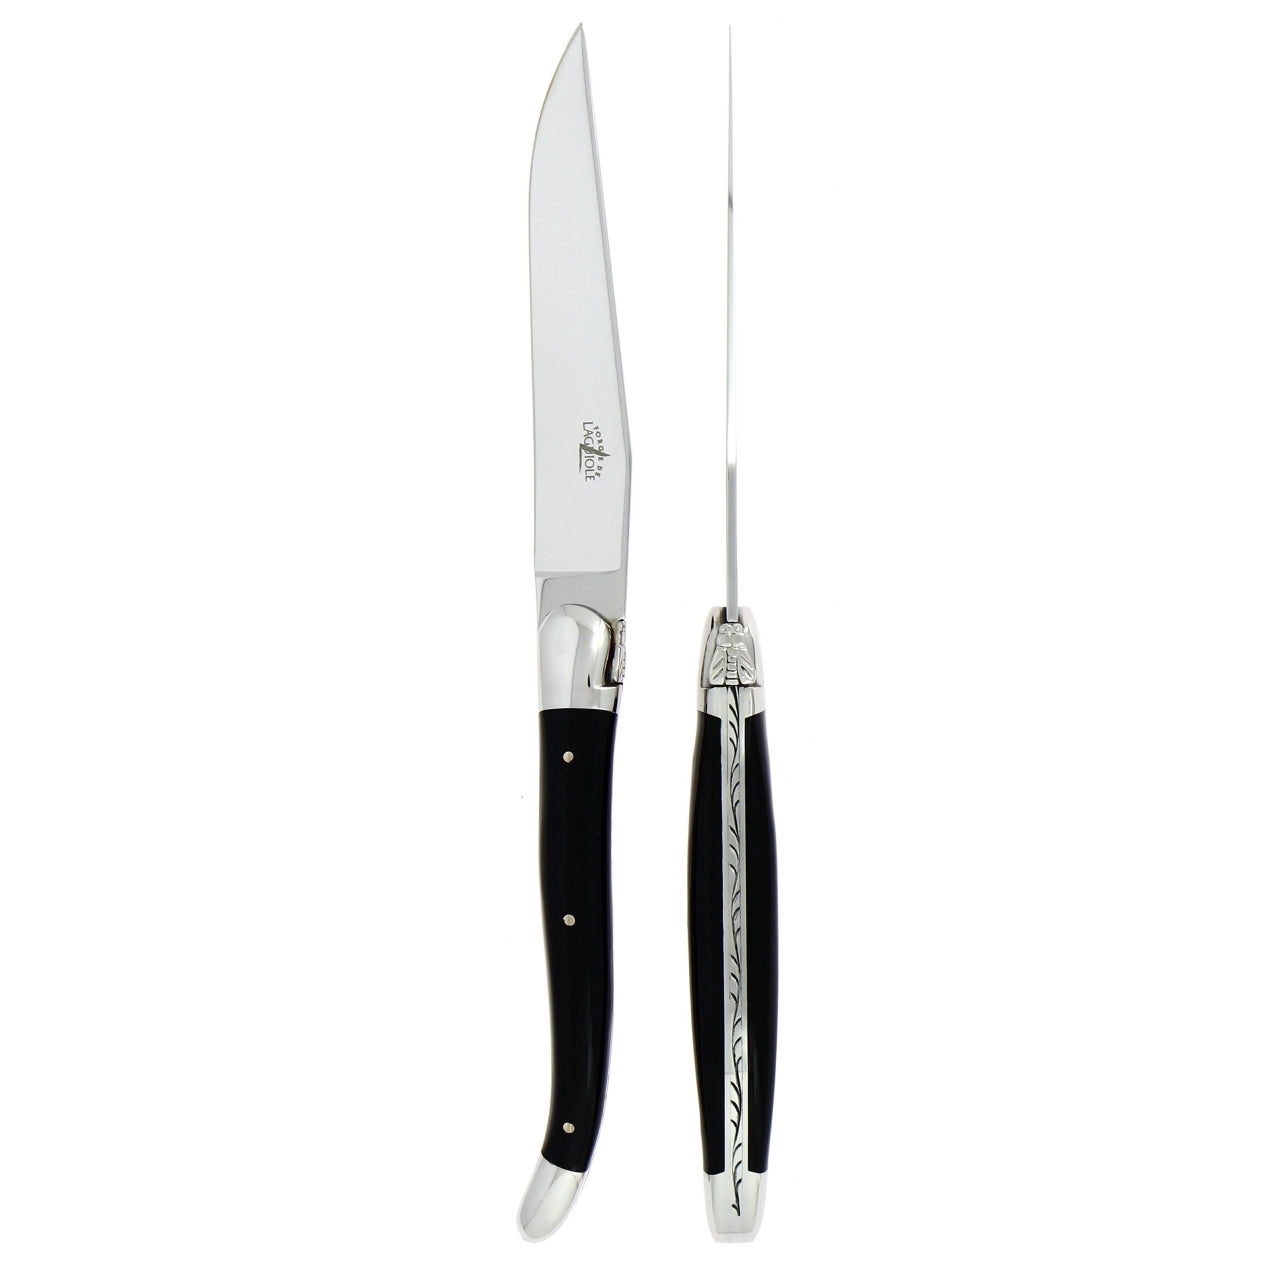 Forge de Laguiole Steak Knives - Black Acrylic - Laguiole Imports